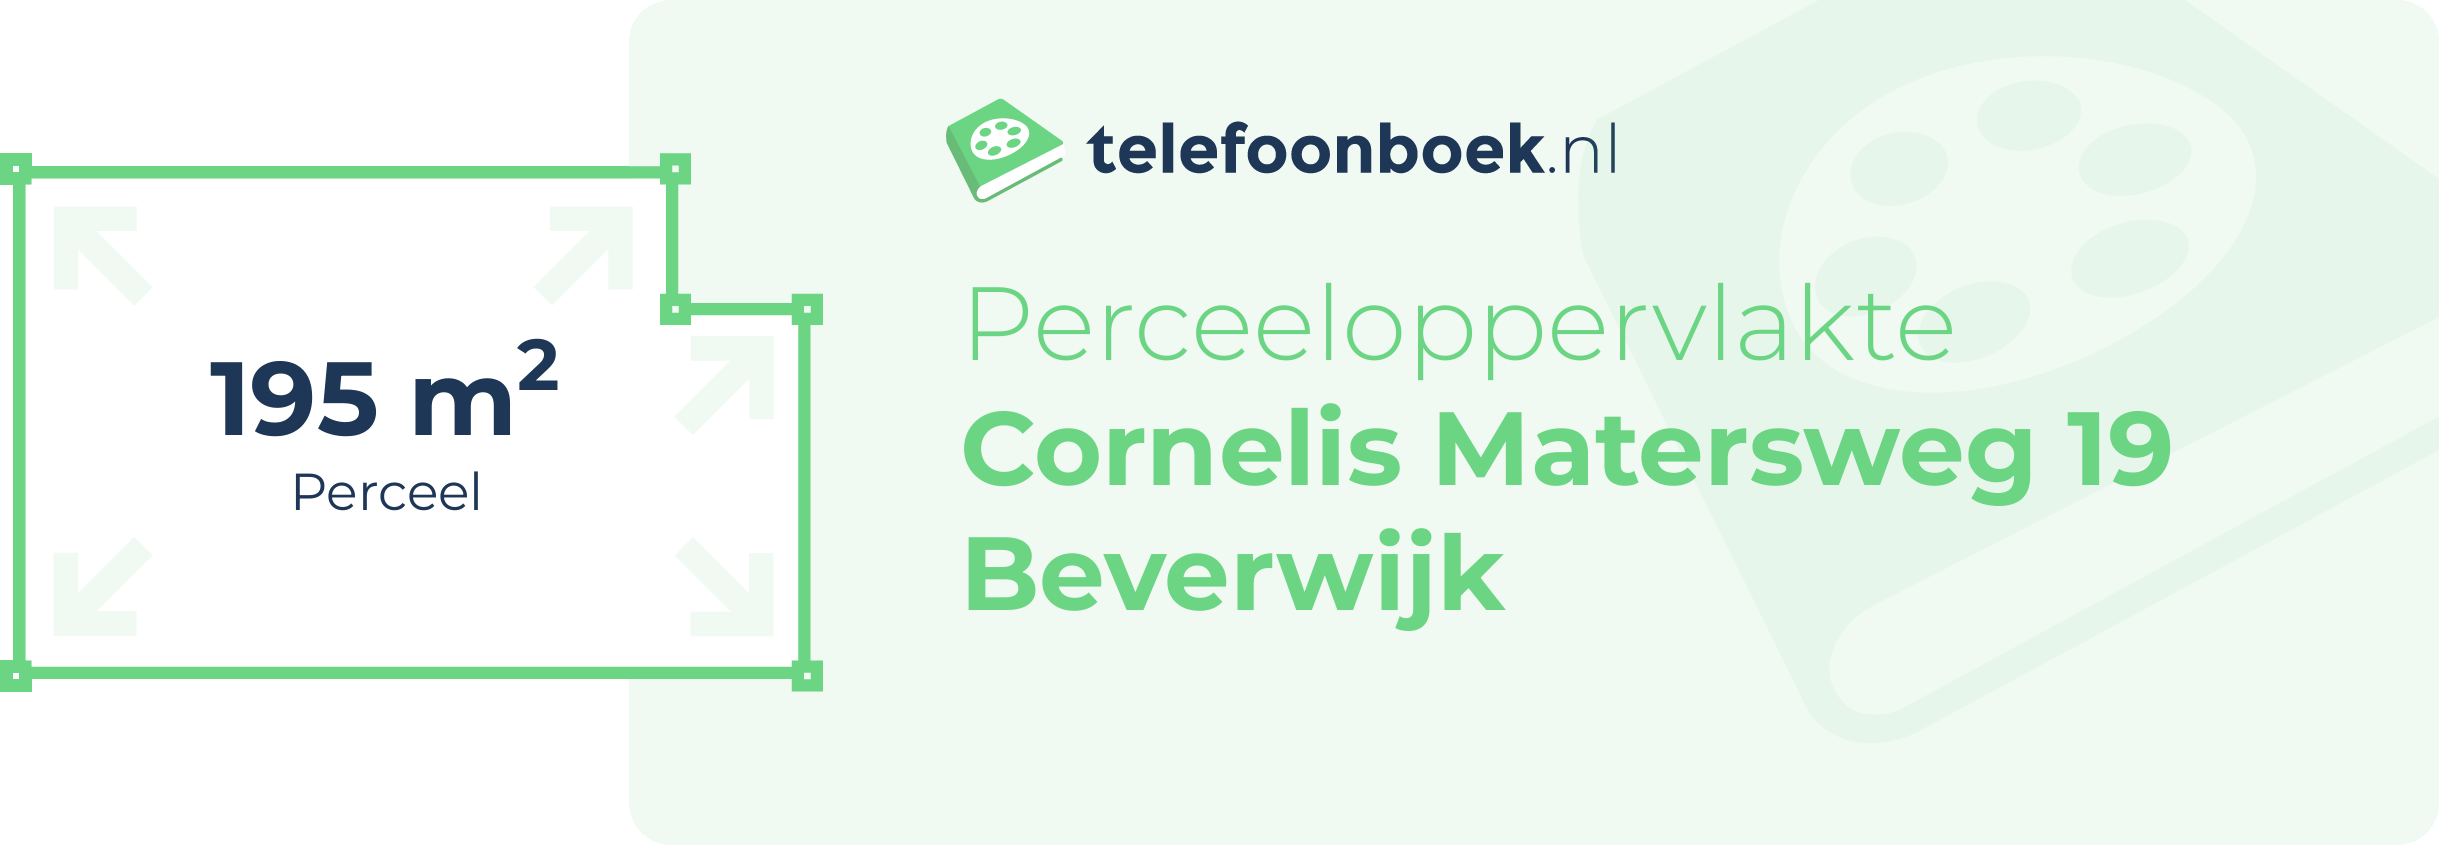 Perceeloppervlakte Cornelis Matersweg 19 Beverwijk